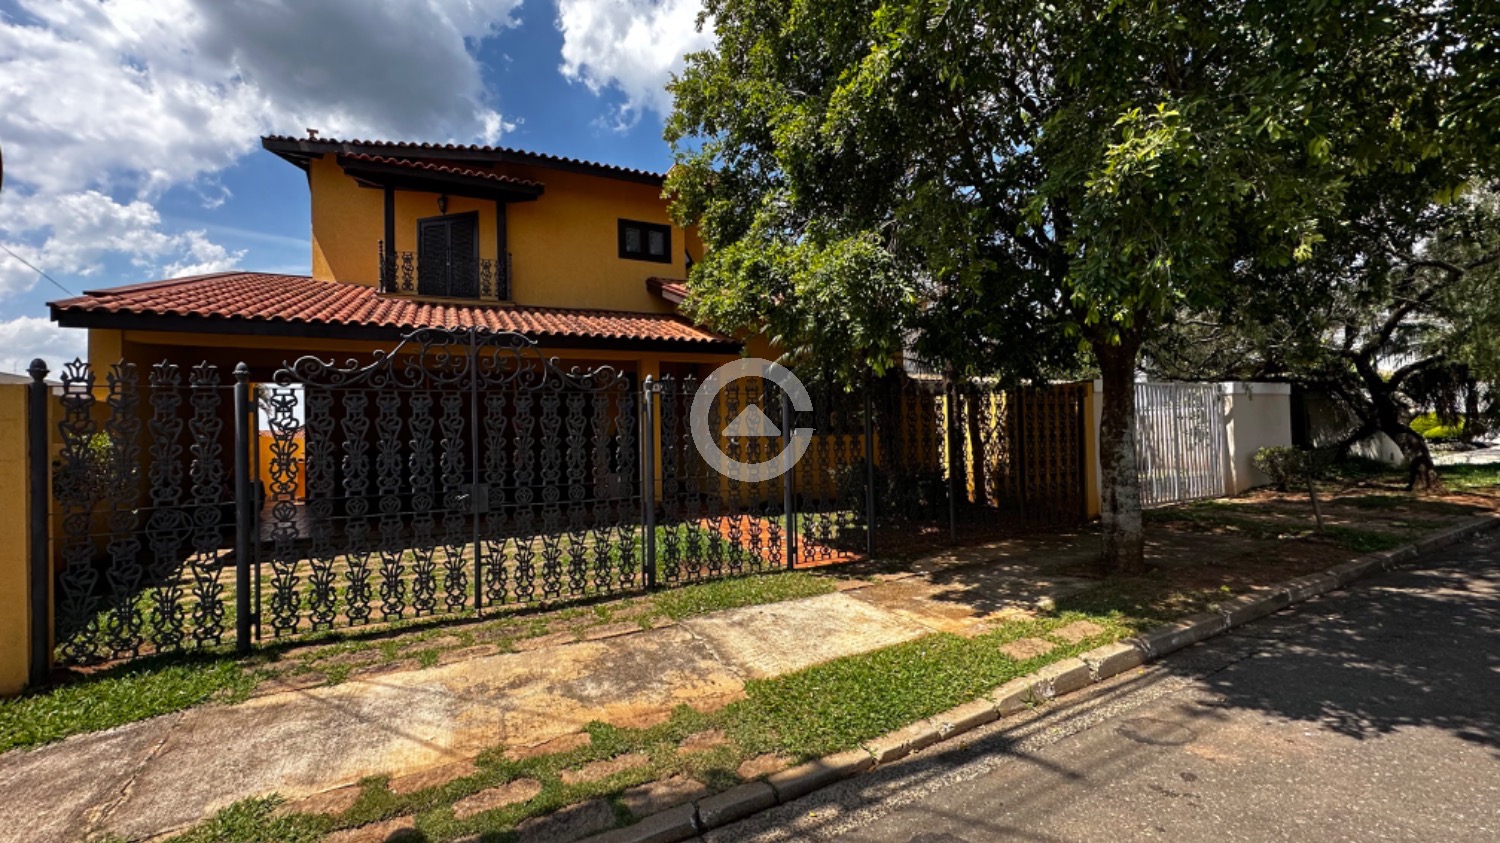 CA047379 | Casa venda Loteamento Caminhos de San Conrado | Campinas/SP